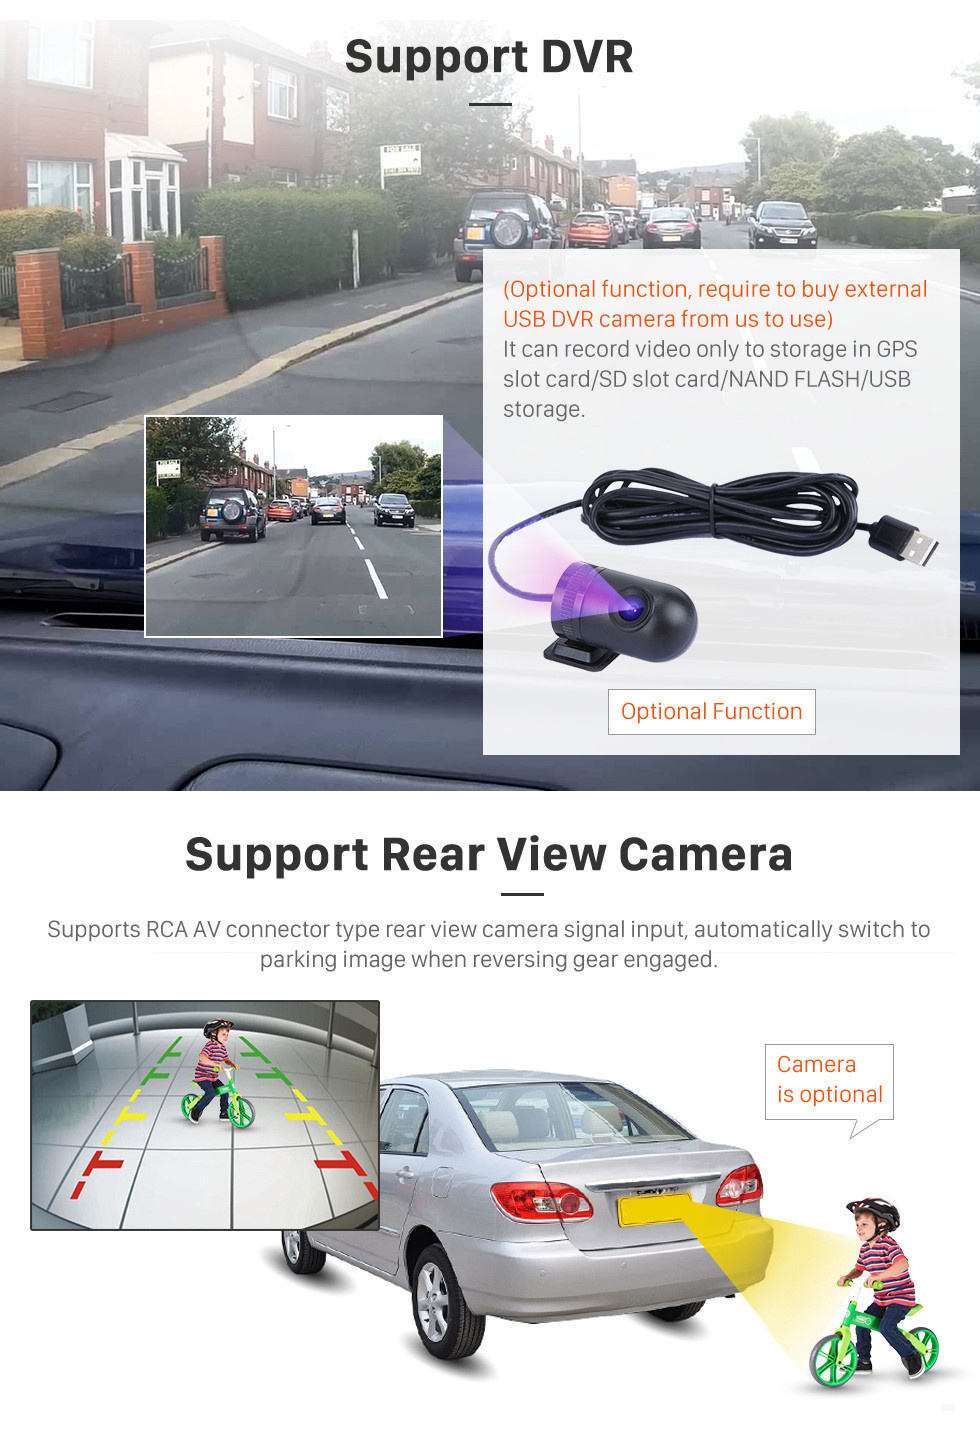 Seicane HD Touchscreen 2015-2016 chevy Chevrolet malibu Android 11.0 9 polegada Navegação GPS Rádio Bluetooth USB Carplay WIFI AUX apoio DAB + Controle de Volante